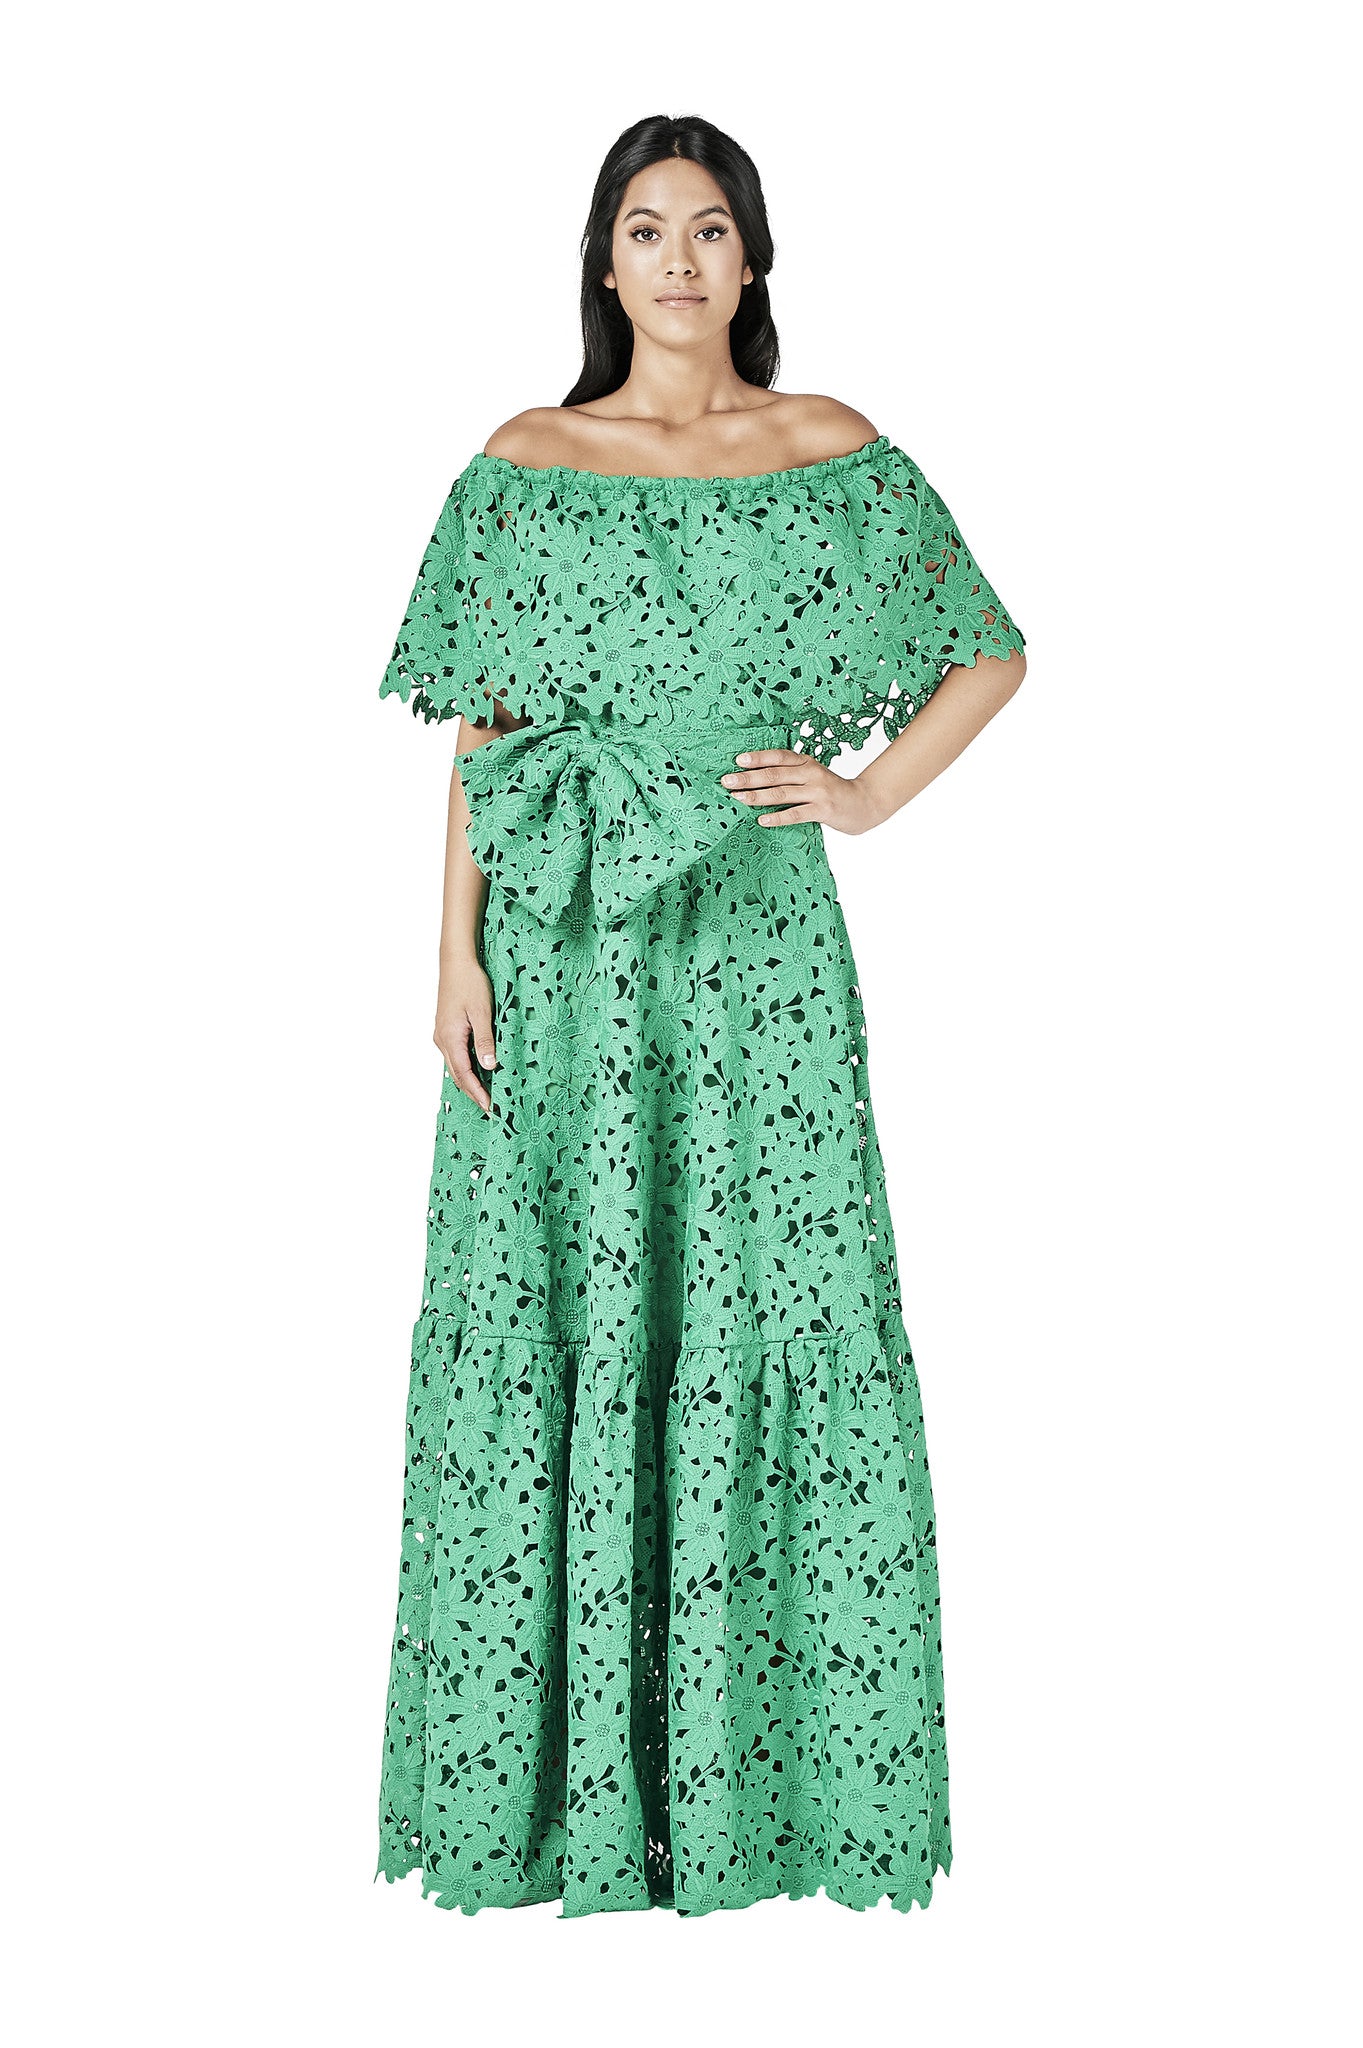 Green Lace Crochet Off Shoulder Dress Maxi